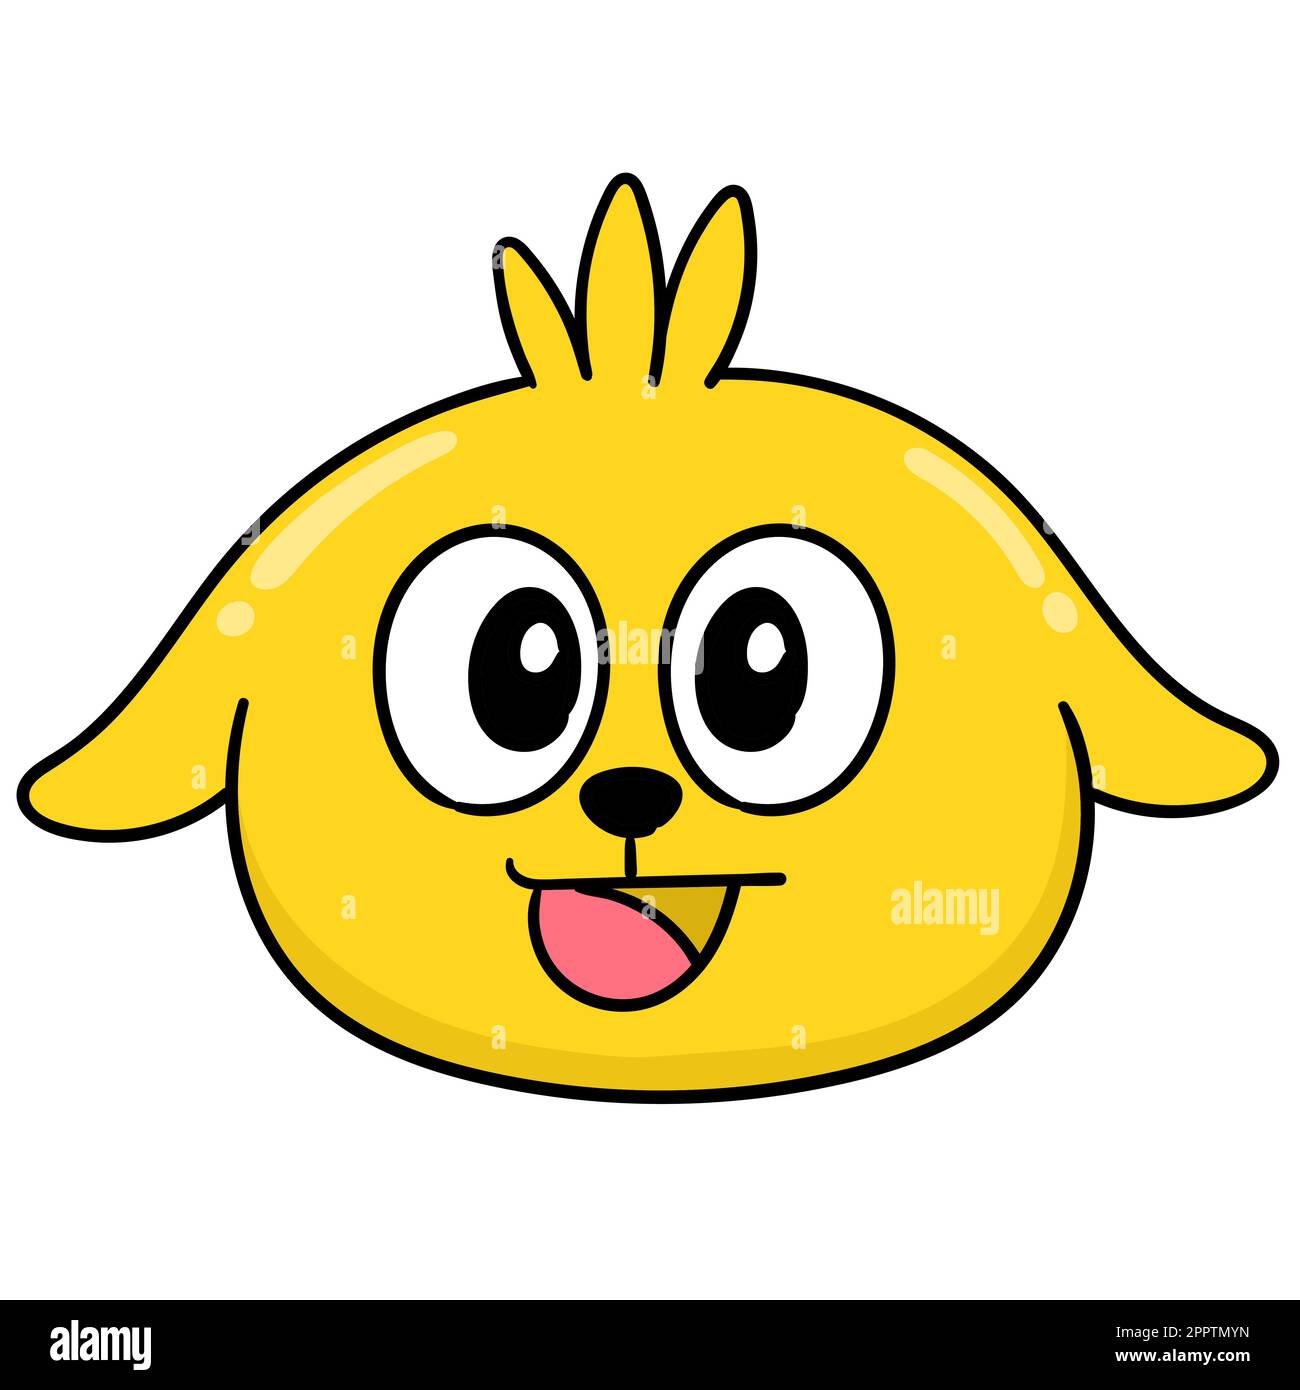 émoticône de tête de chien jaune avec expression rieuse, image d'icône de doodle Illustration de Vecteur